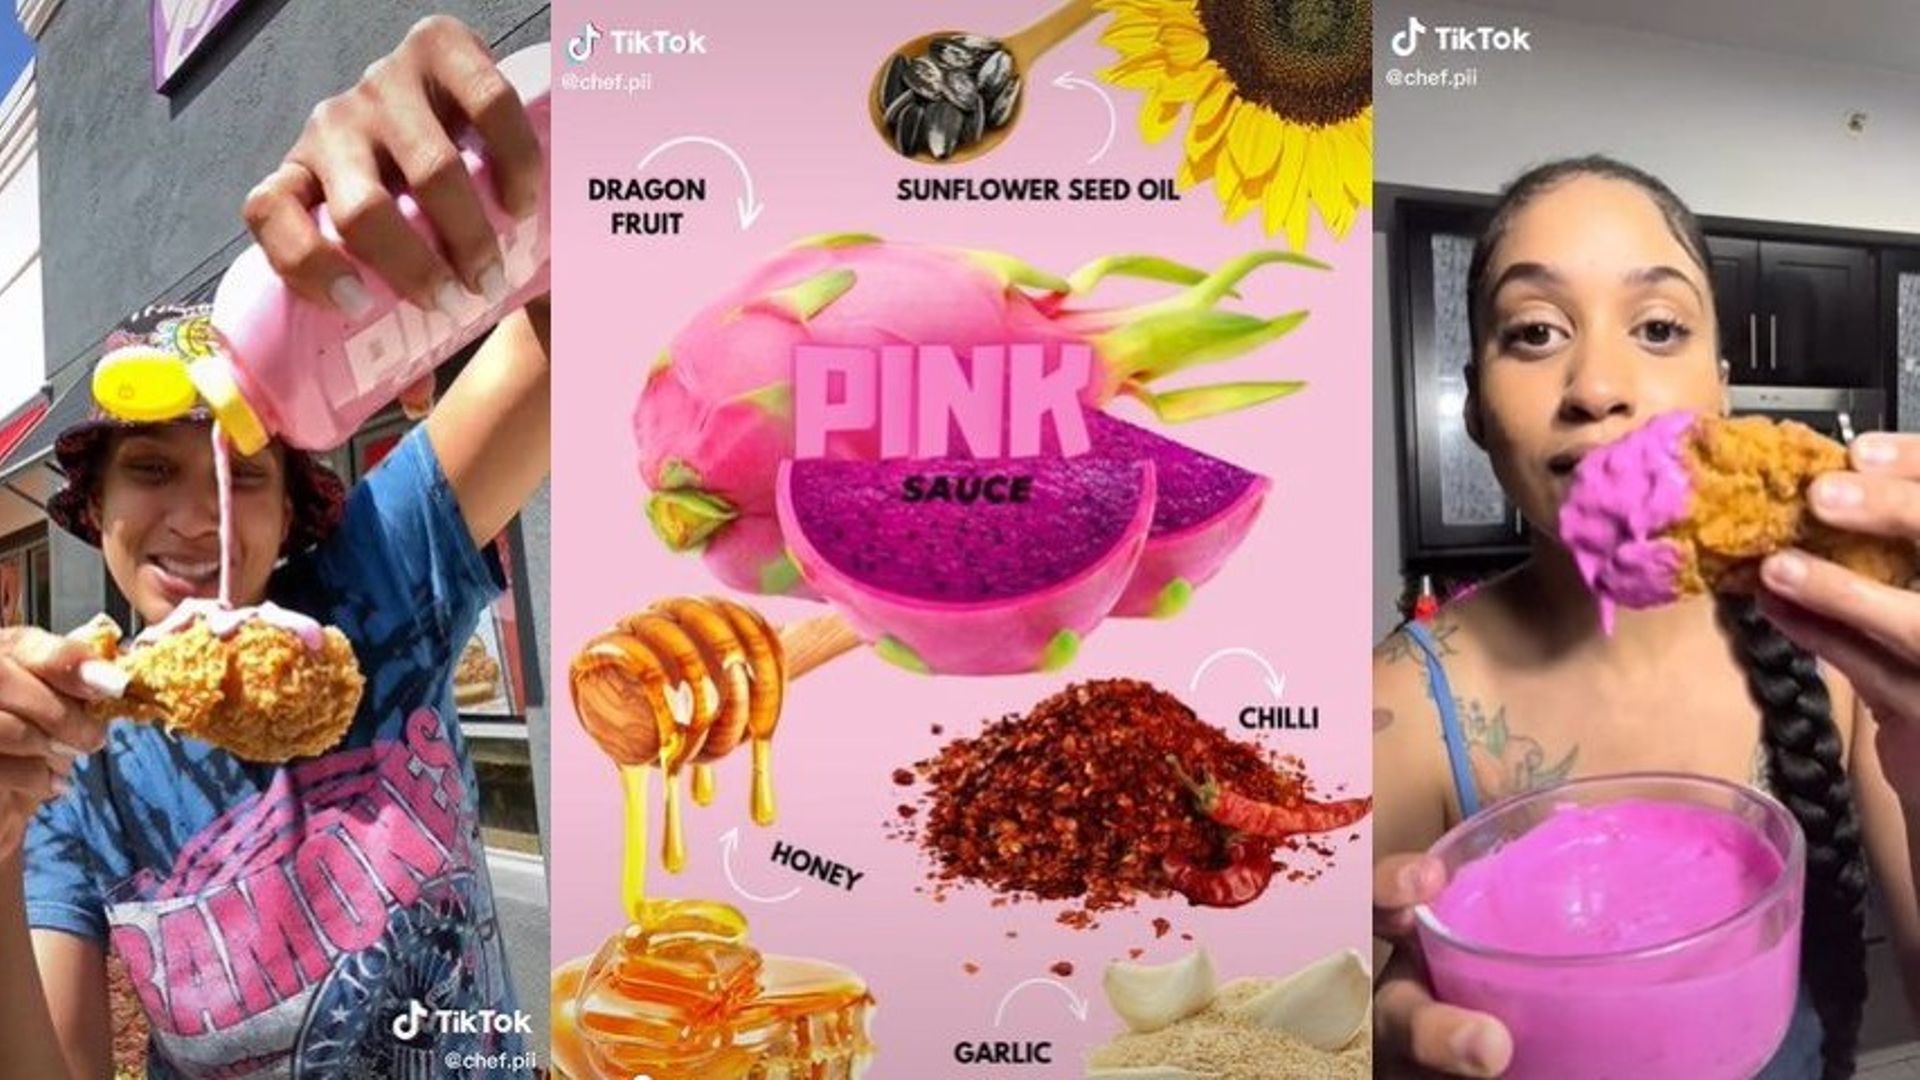 Créée par la Chef Pii, la pink sauce a fait le buzz sur TikTok.